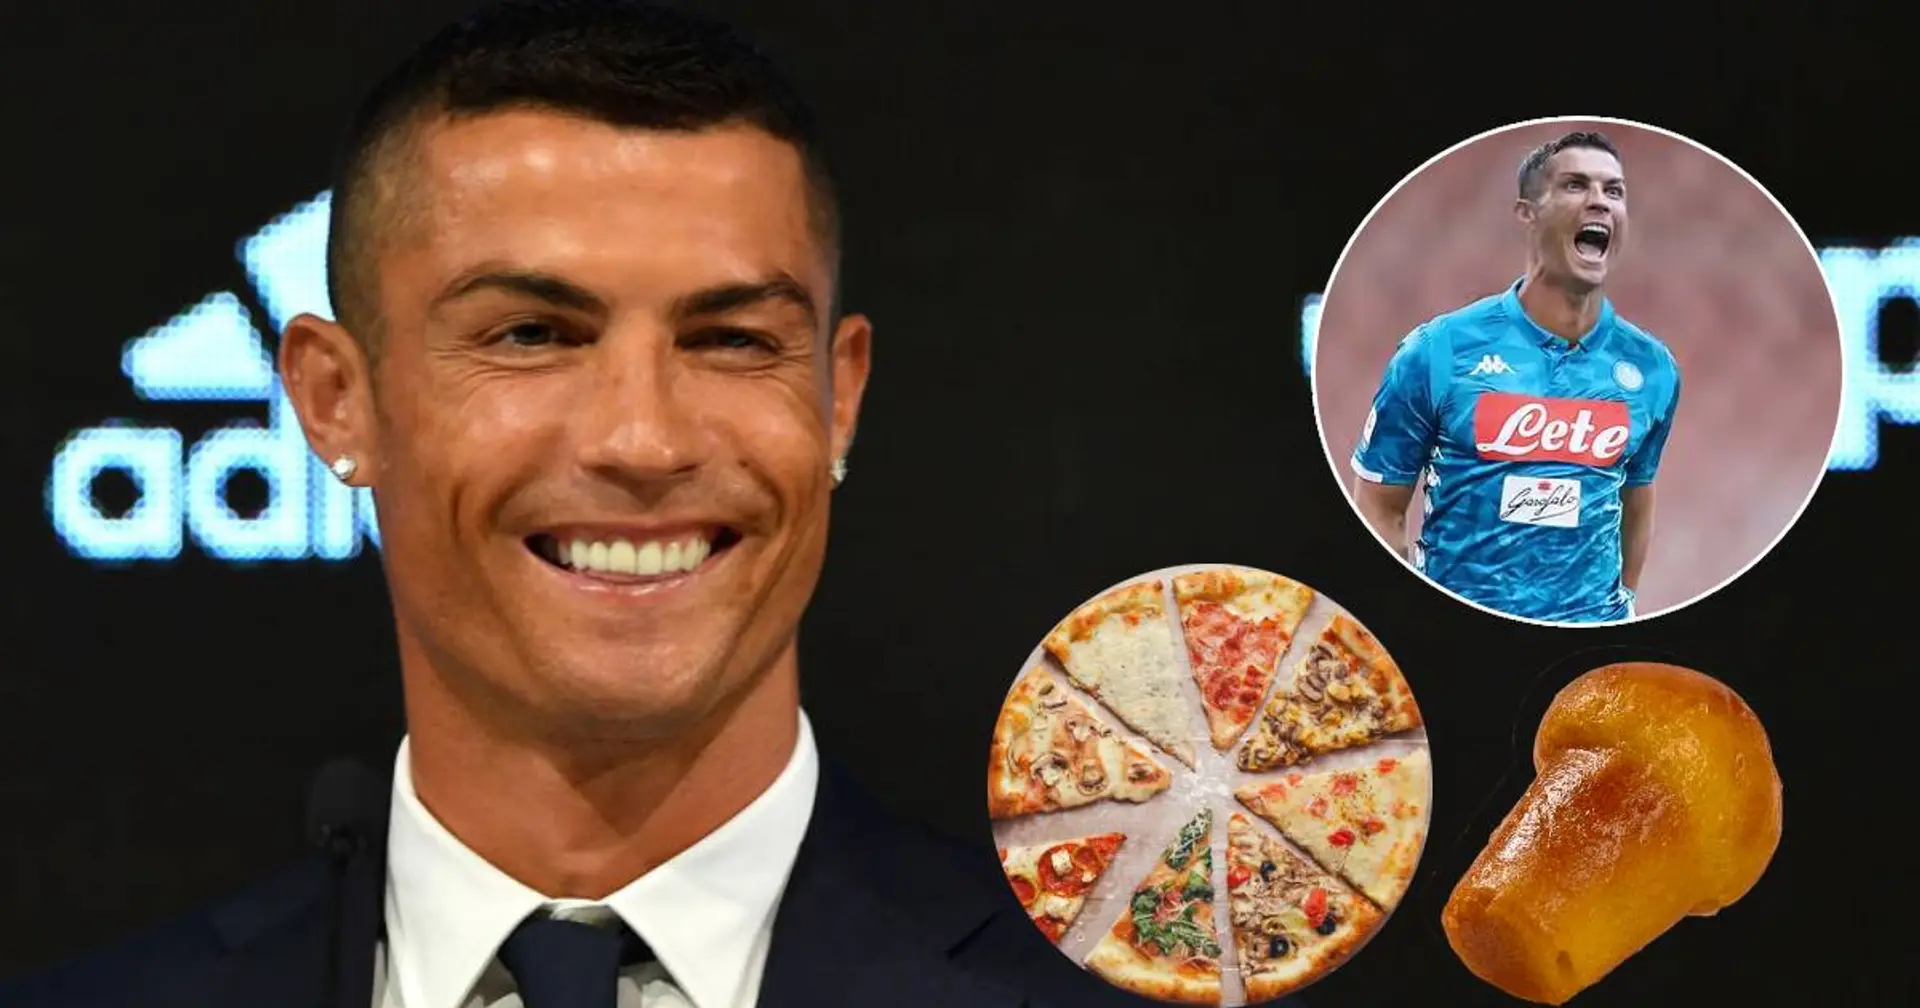 "Lo pagano in pizze e babà": l'accostamento di CR7 al Napoli suscita l'ilarità dei tifosi della Juventus